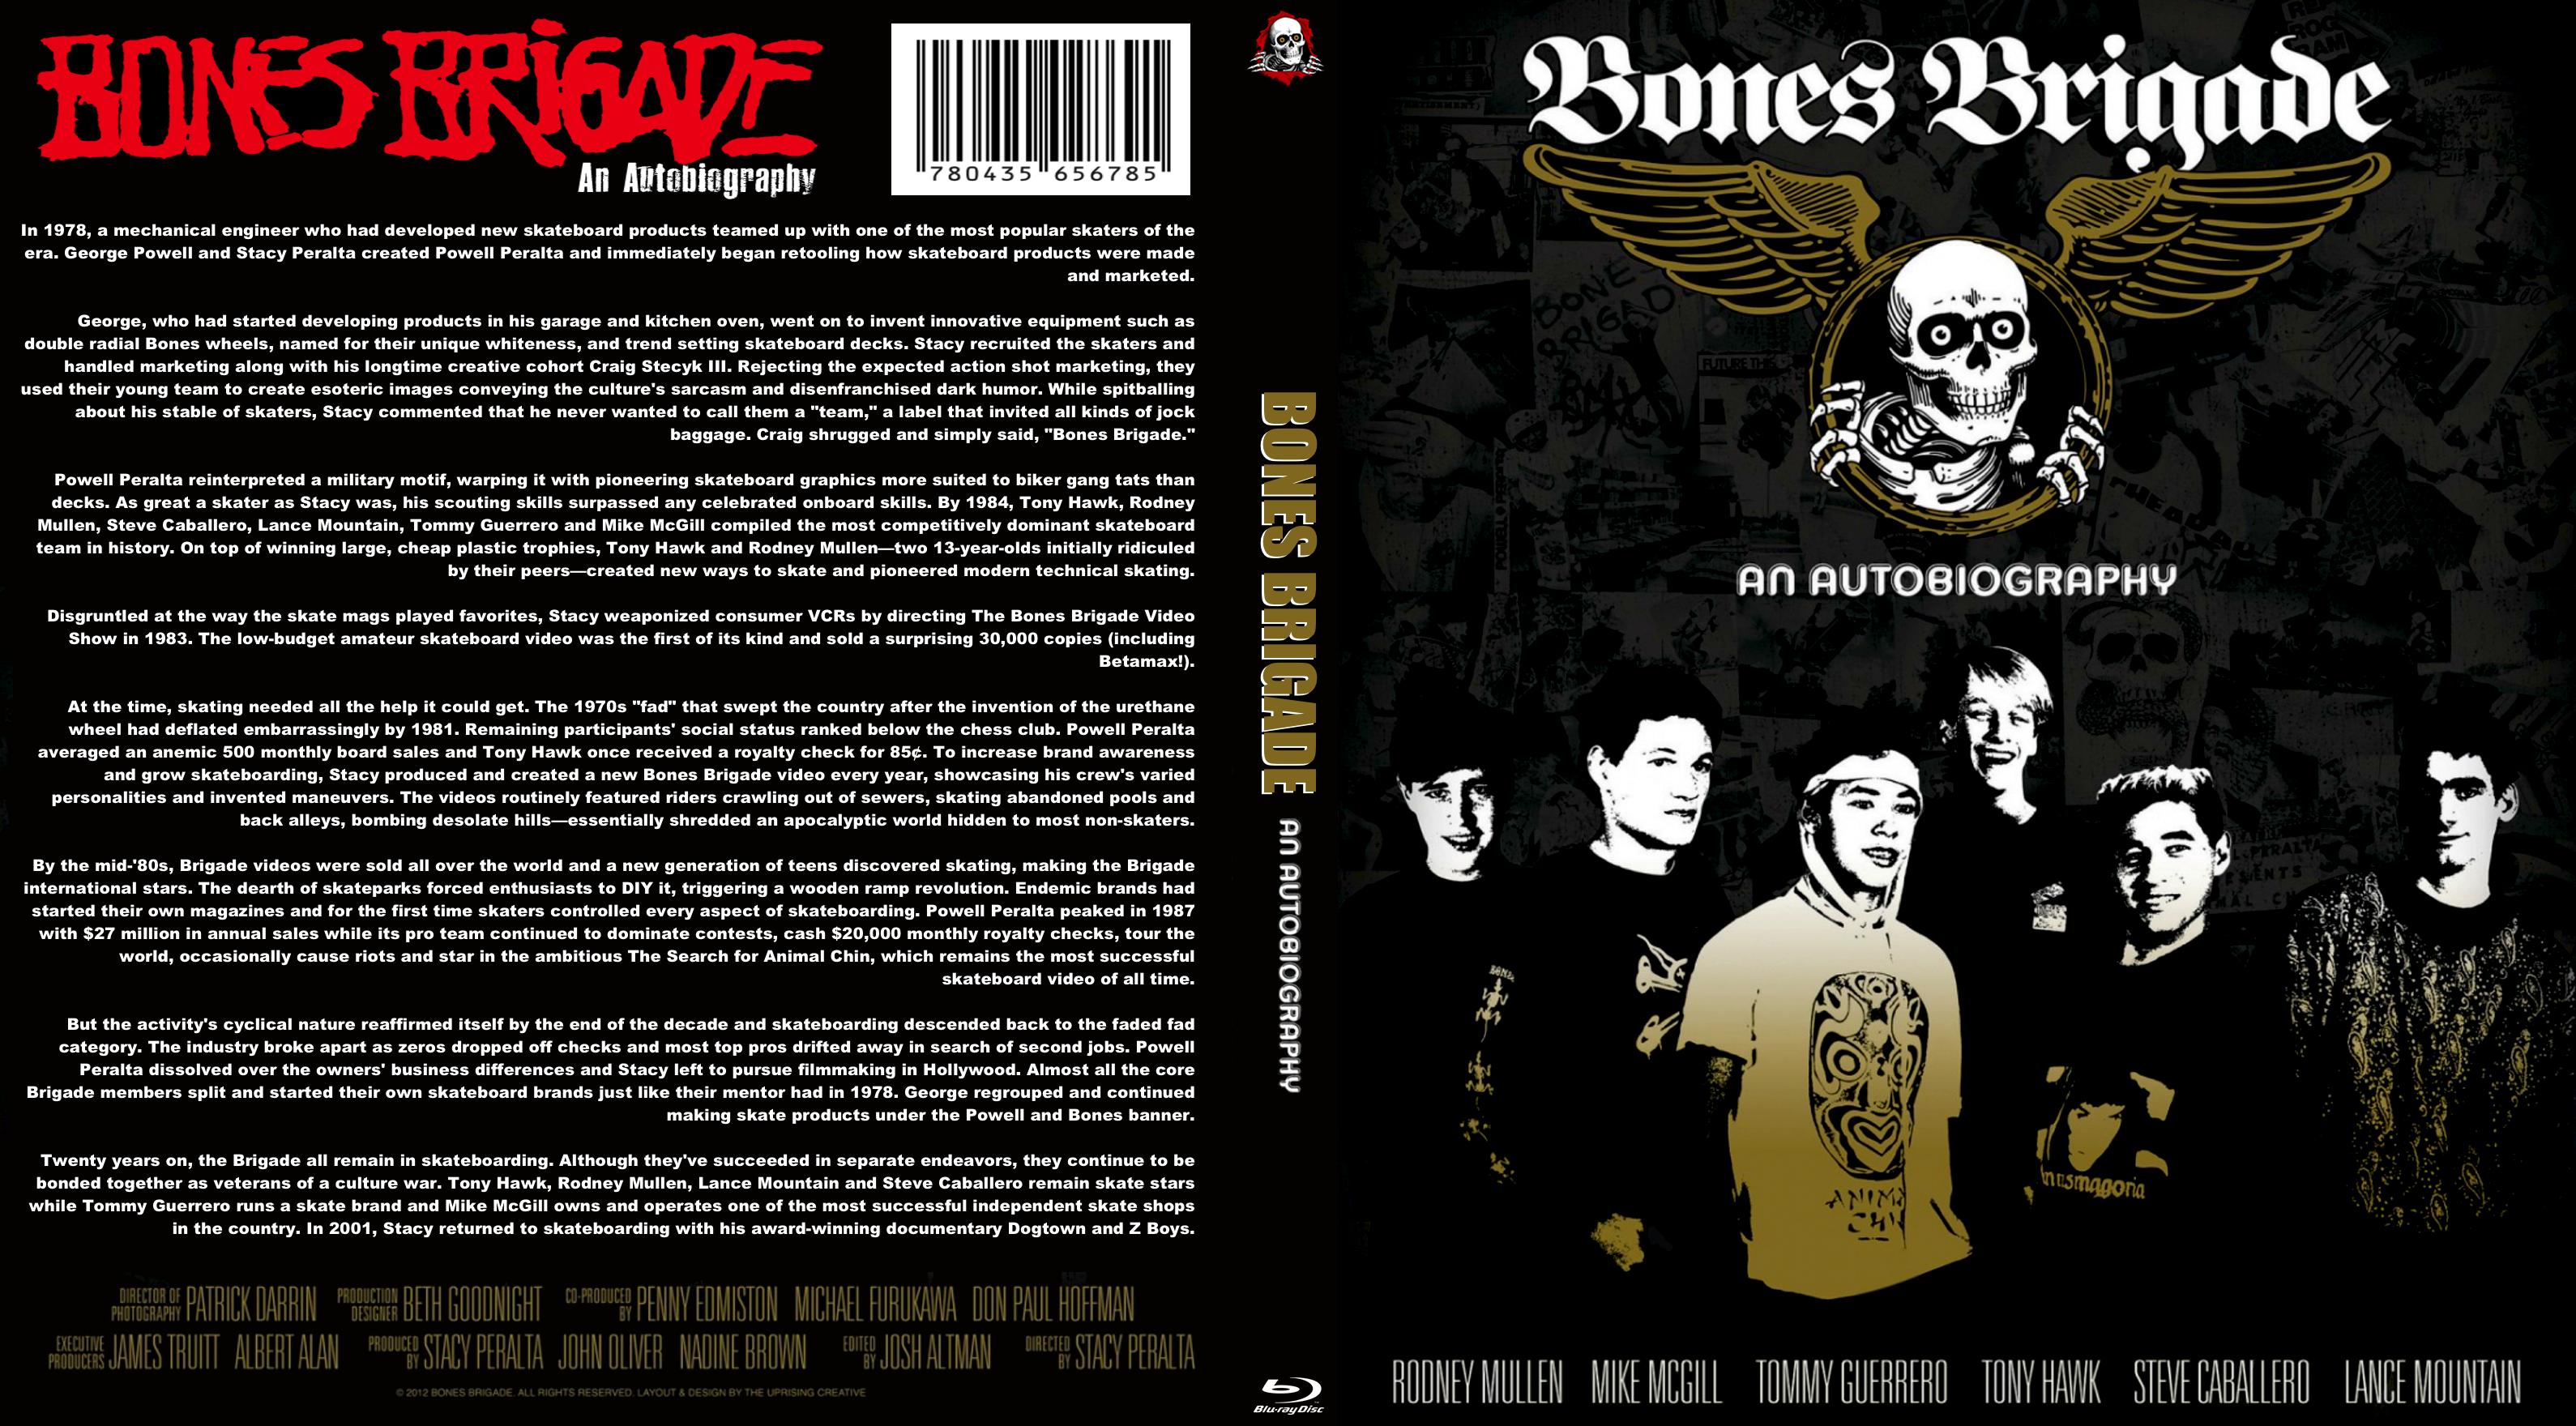 Bones Brigade: An Autobiography cover